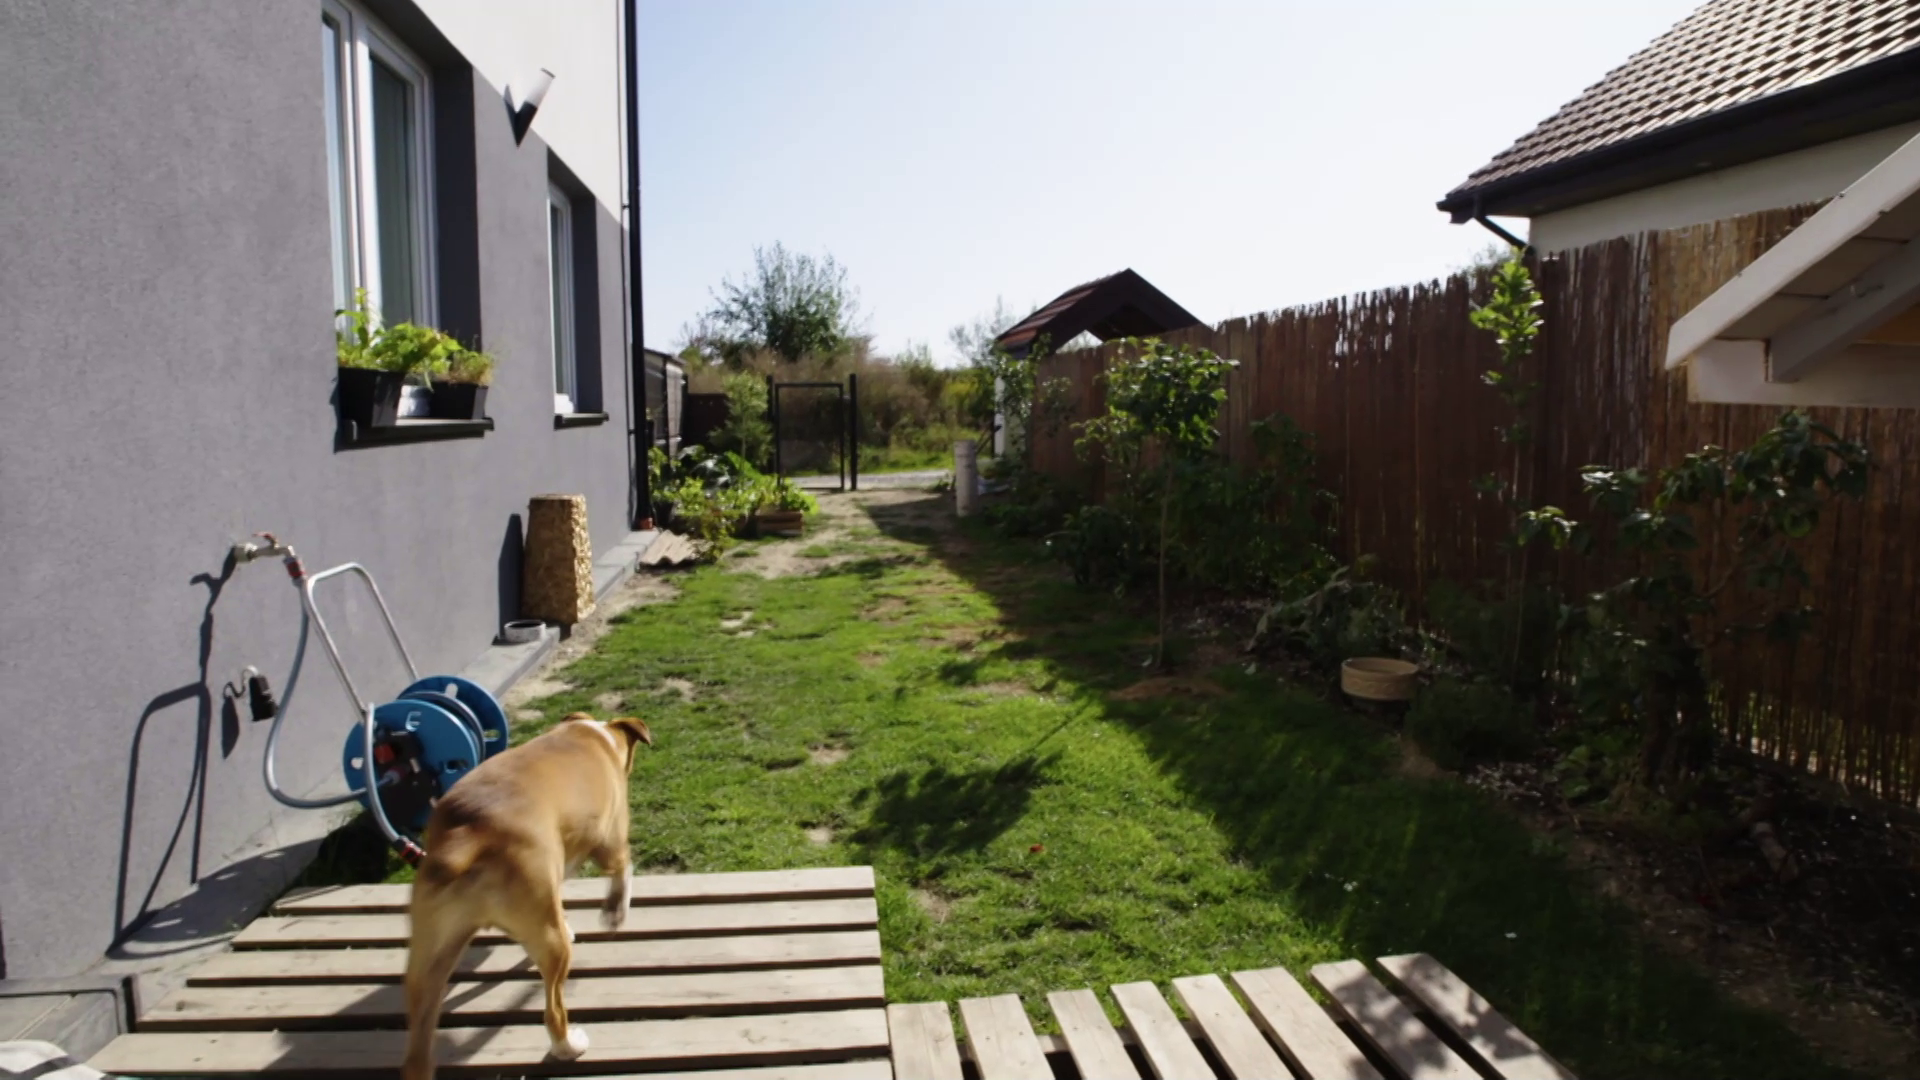 "Polowanie na ogród": to ogródek czy... wybieg dla psów?!